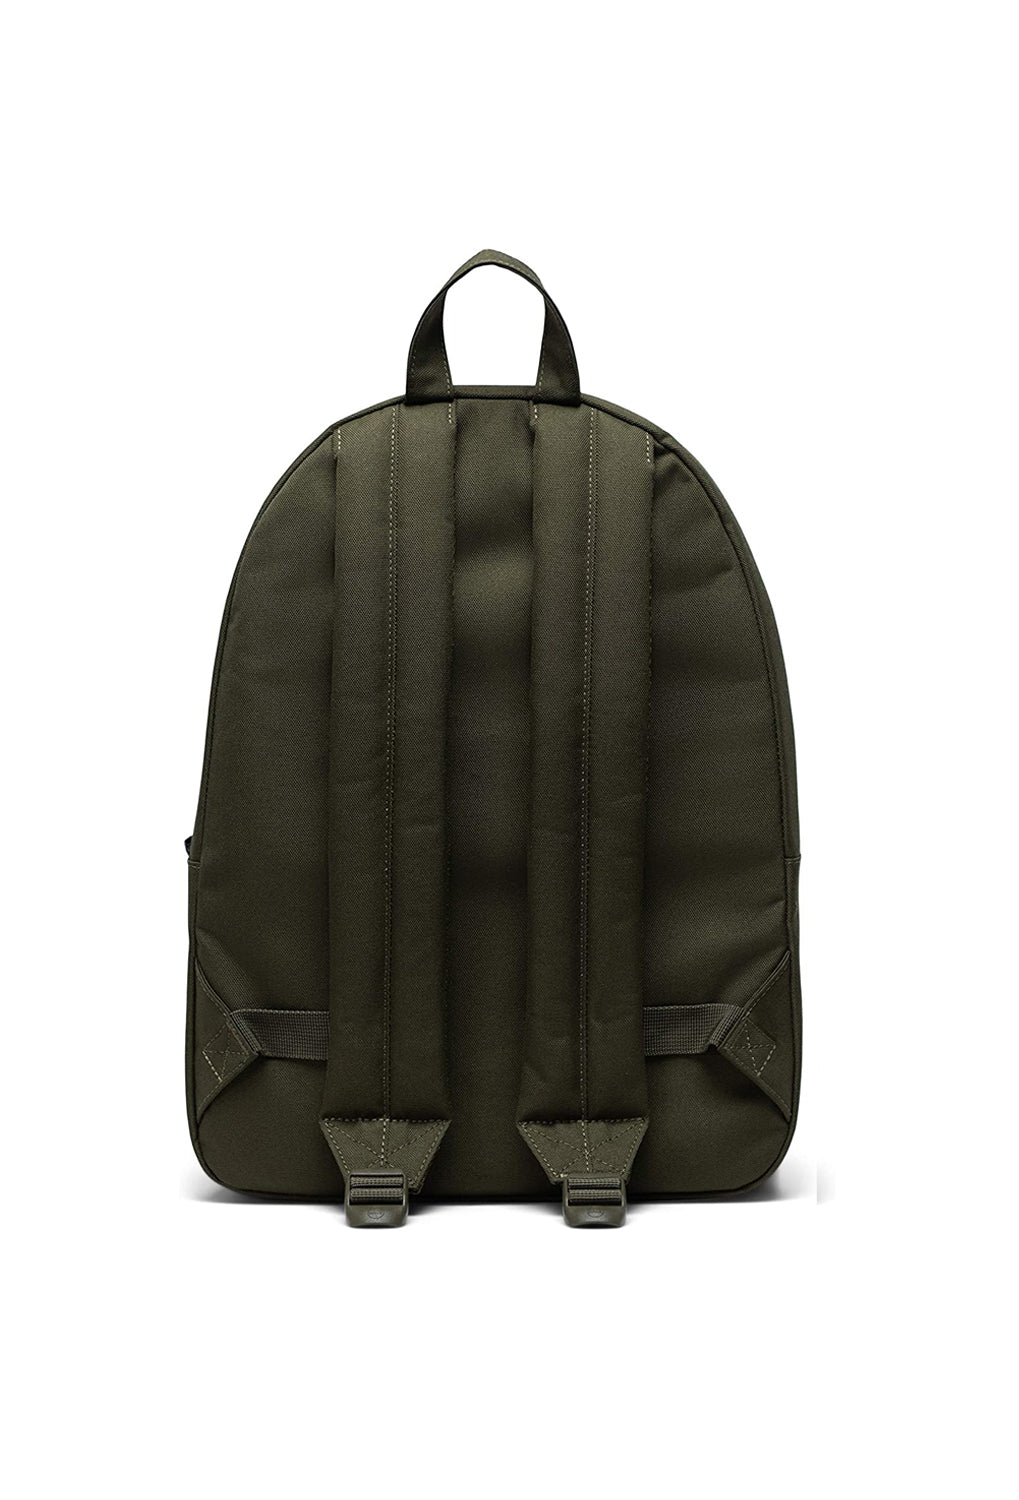 Herschel Classic Ivy Green Backpack